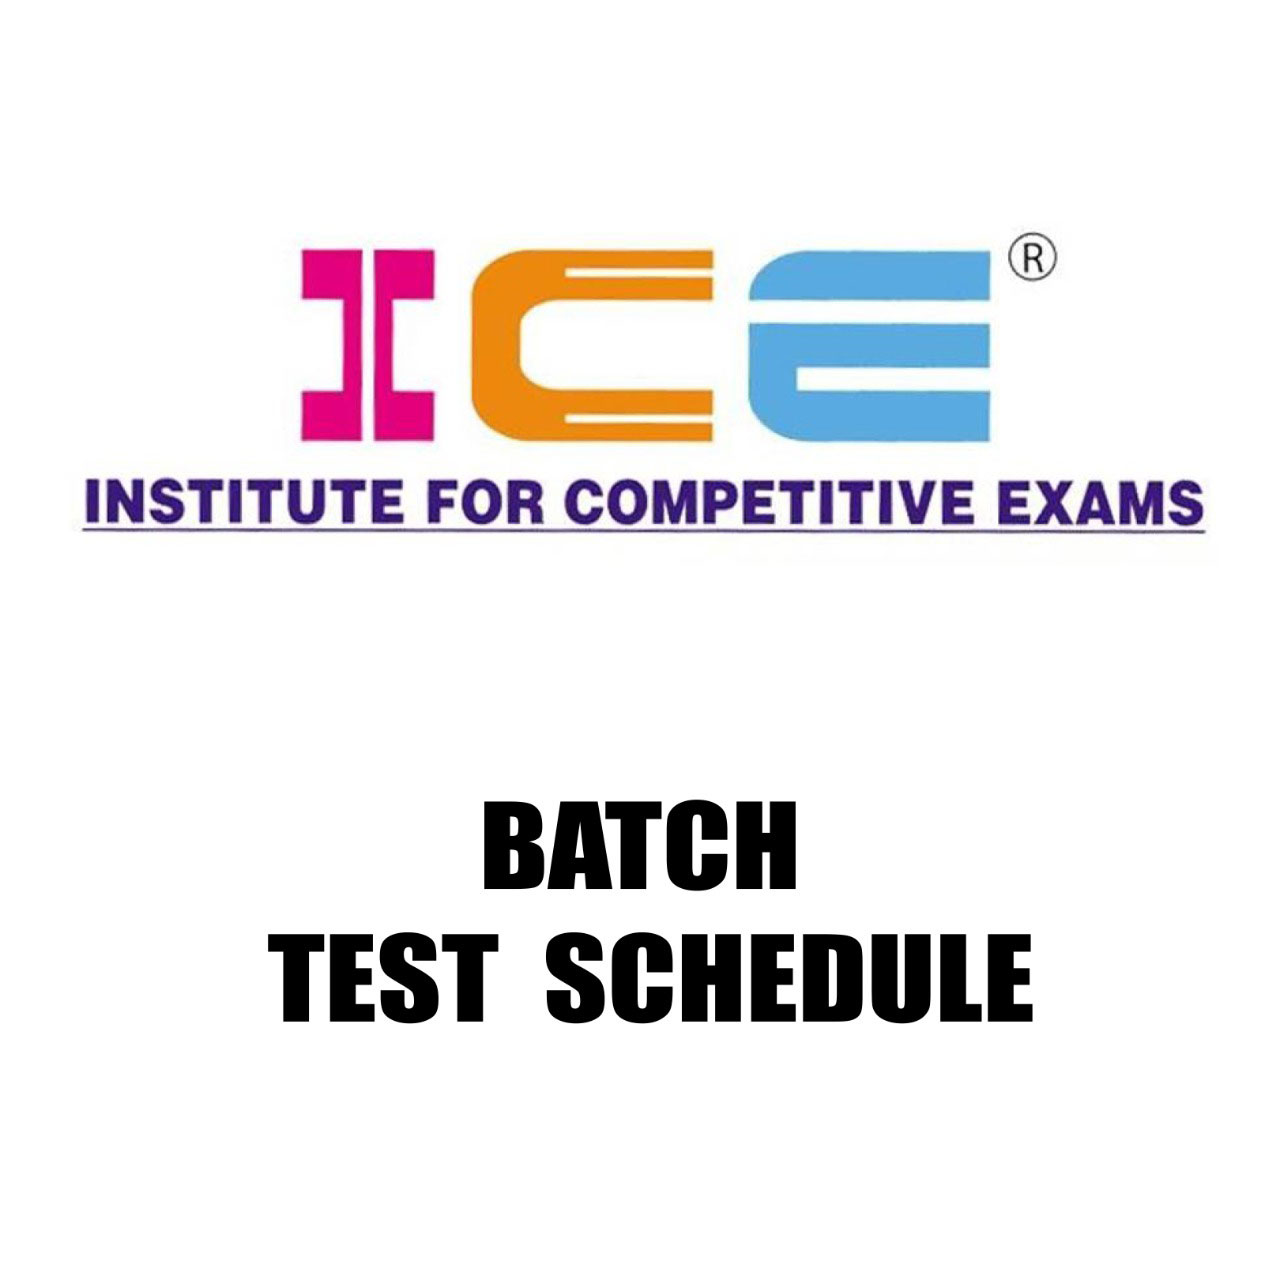 Test schedule